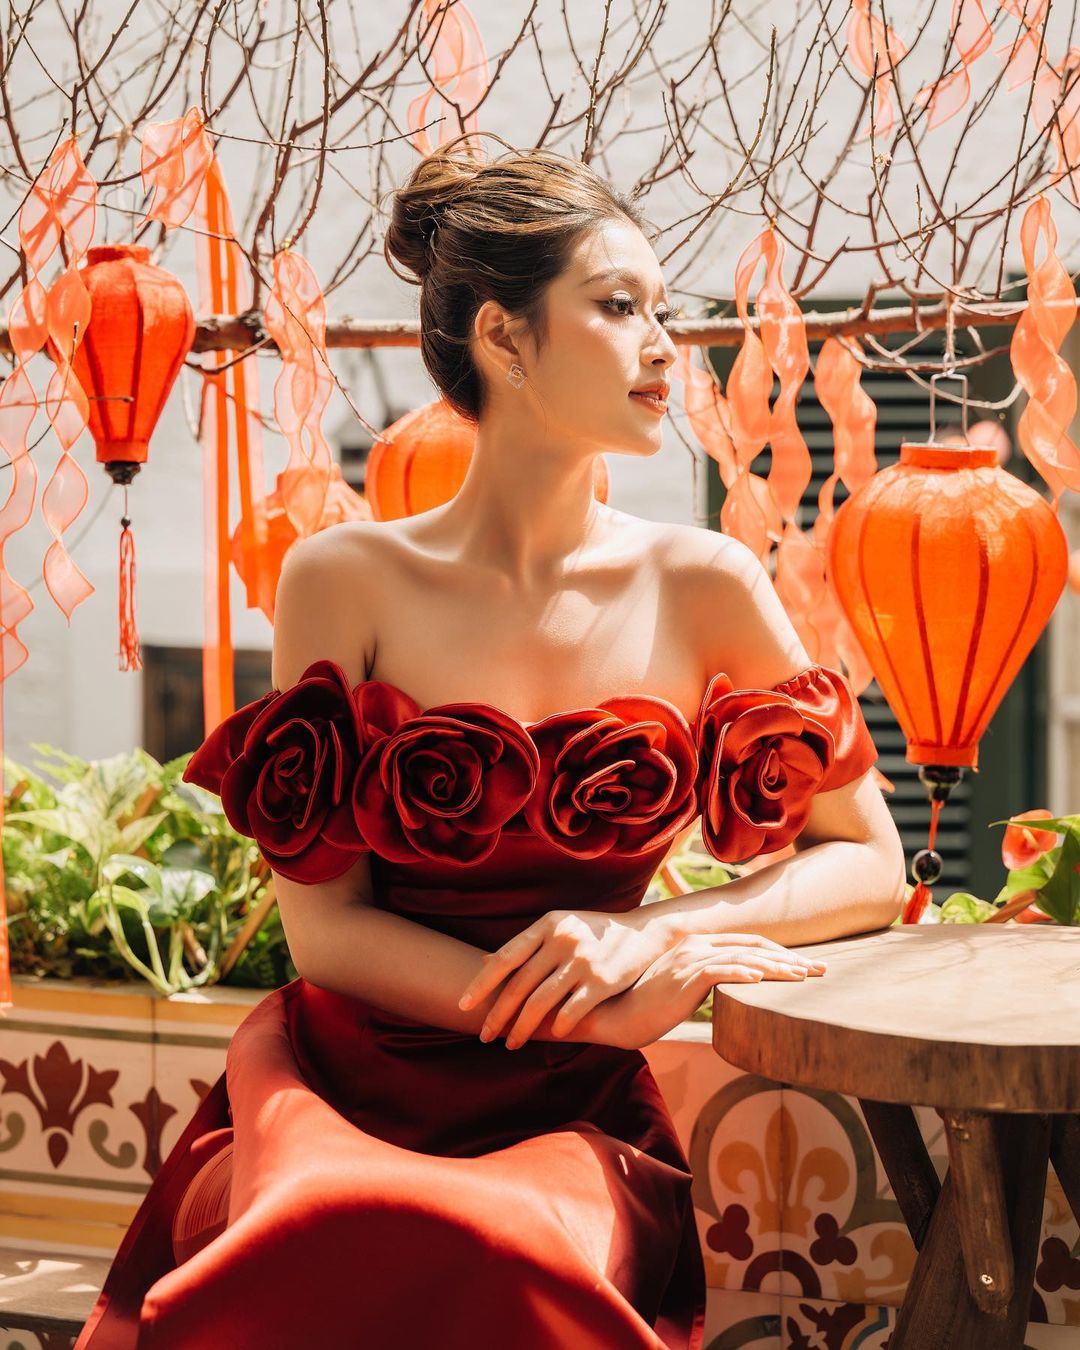 Mùng 1 đầy sắc màu của dàn sao Việt: Hồ Ngọc Hà khoe ảnh đại gia đình, Bảo Thy nổi bật với áo dài đỏ  - Ảnh 4.